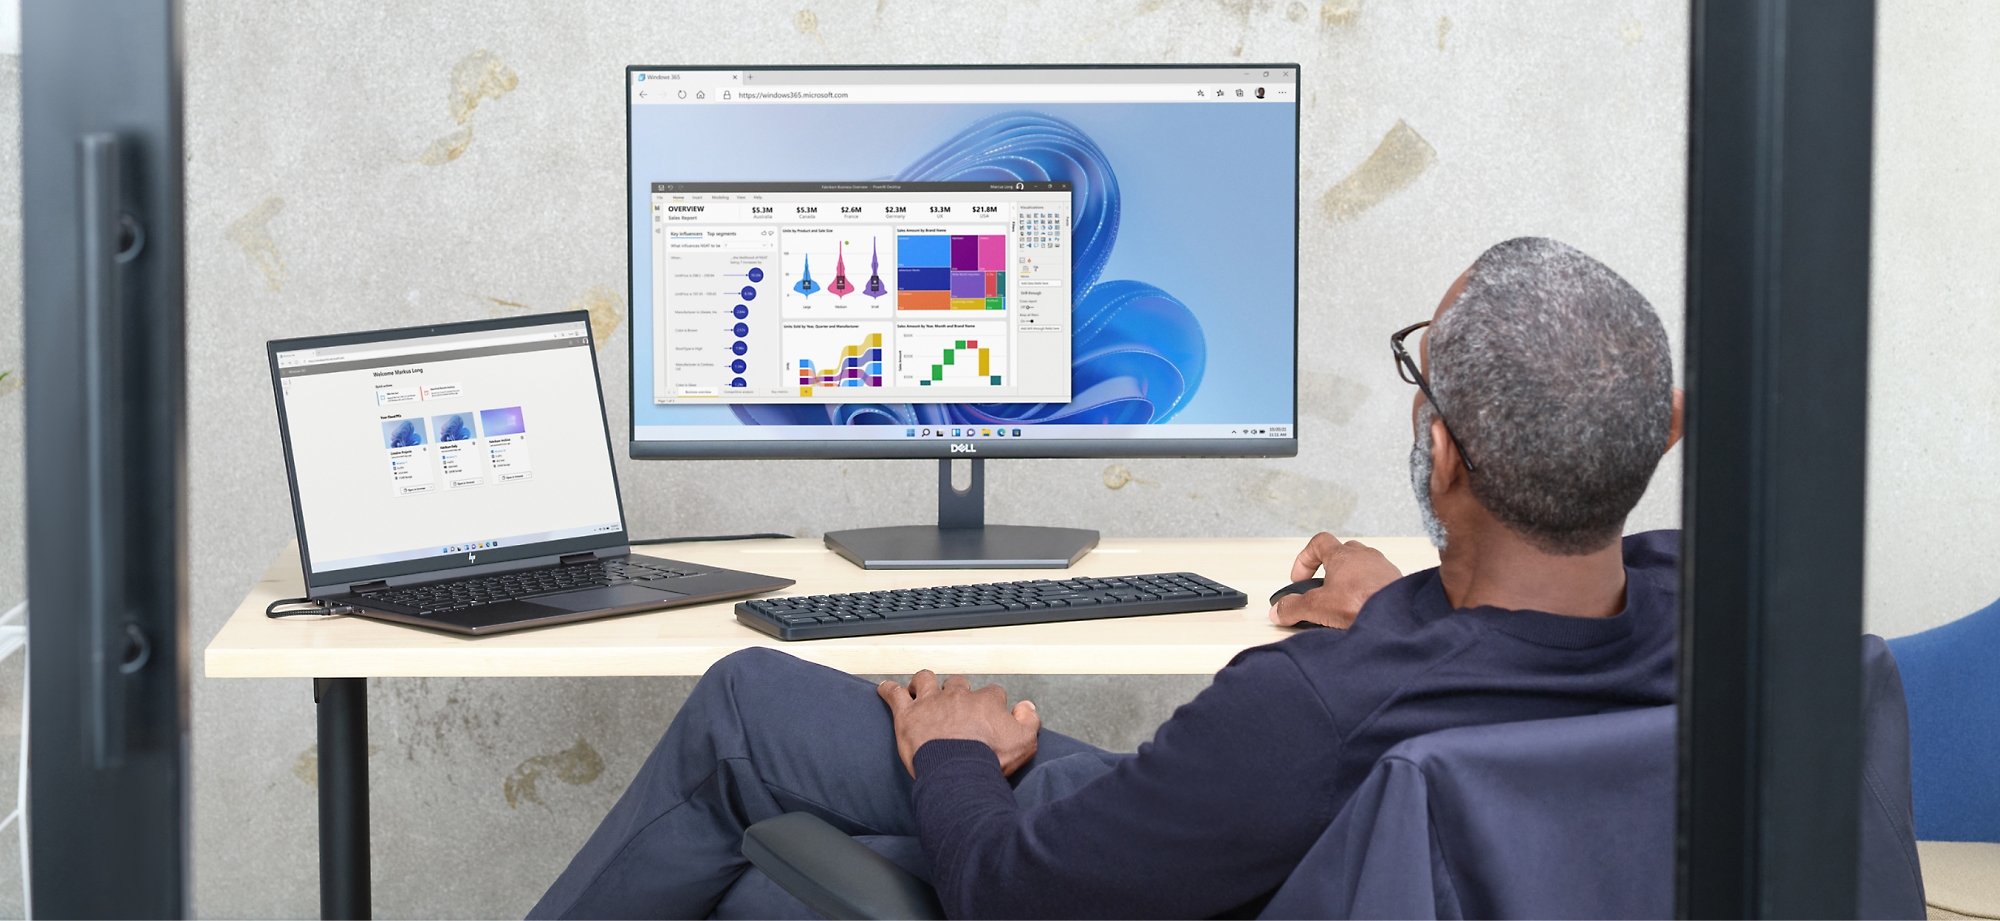 Een man controleert gegevensgrafieken op een computerscherm en laptop in een kantooromgeving.